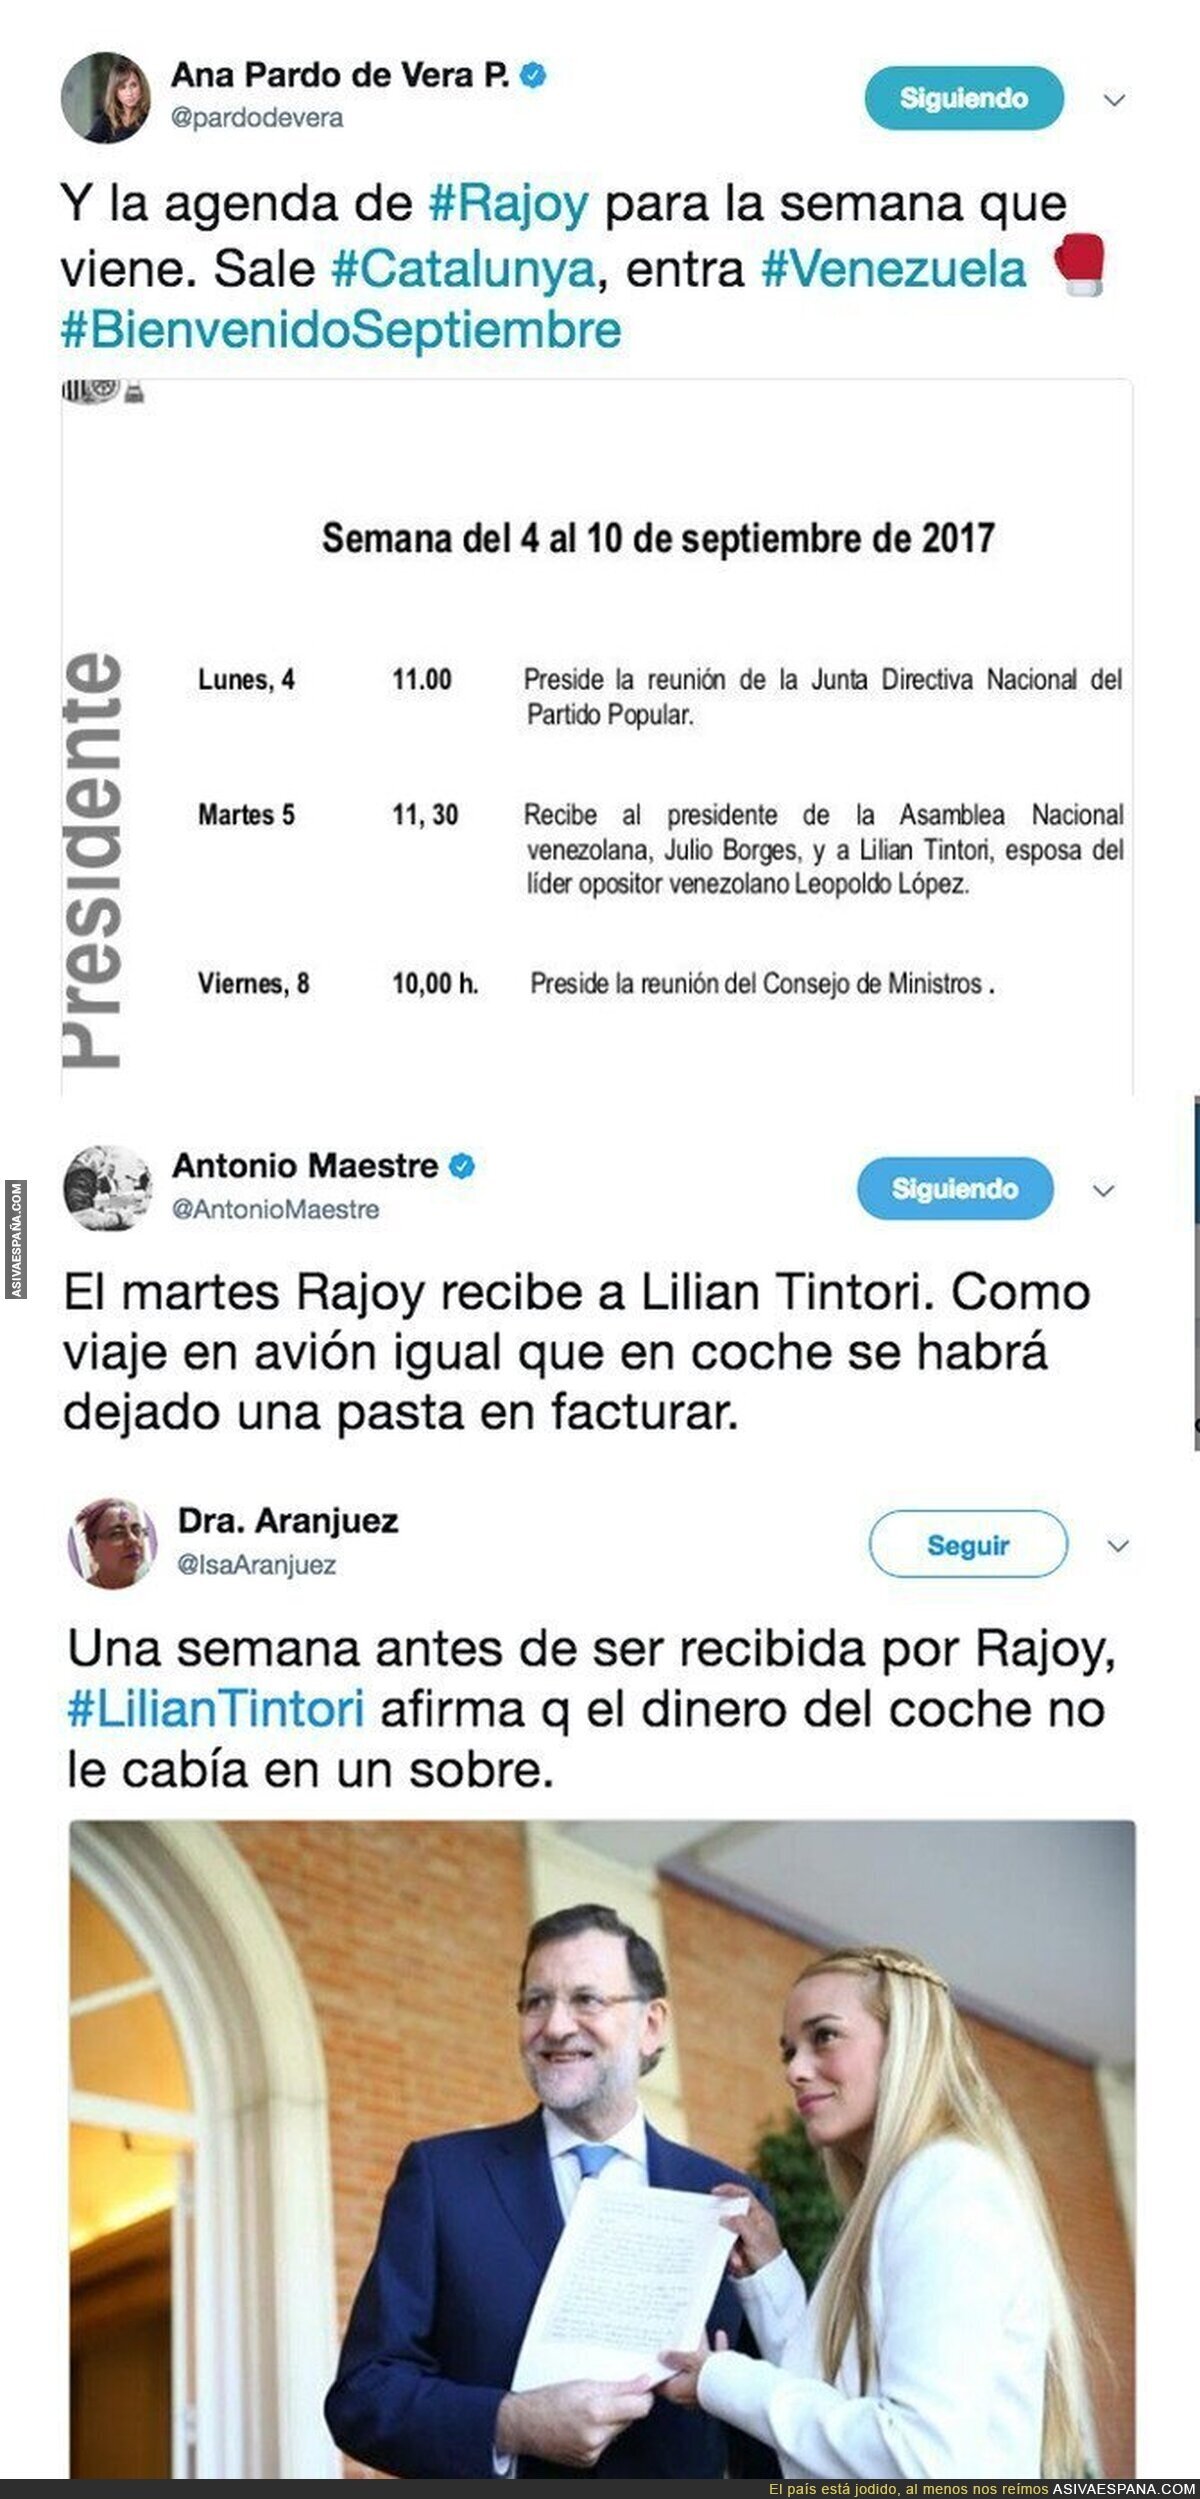 Lilian Tintori y Rajoy se van a ver tras ser incautados 200 millones de bolívares en su coche